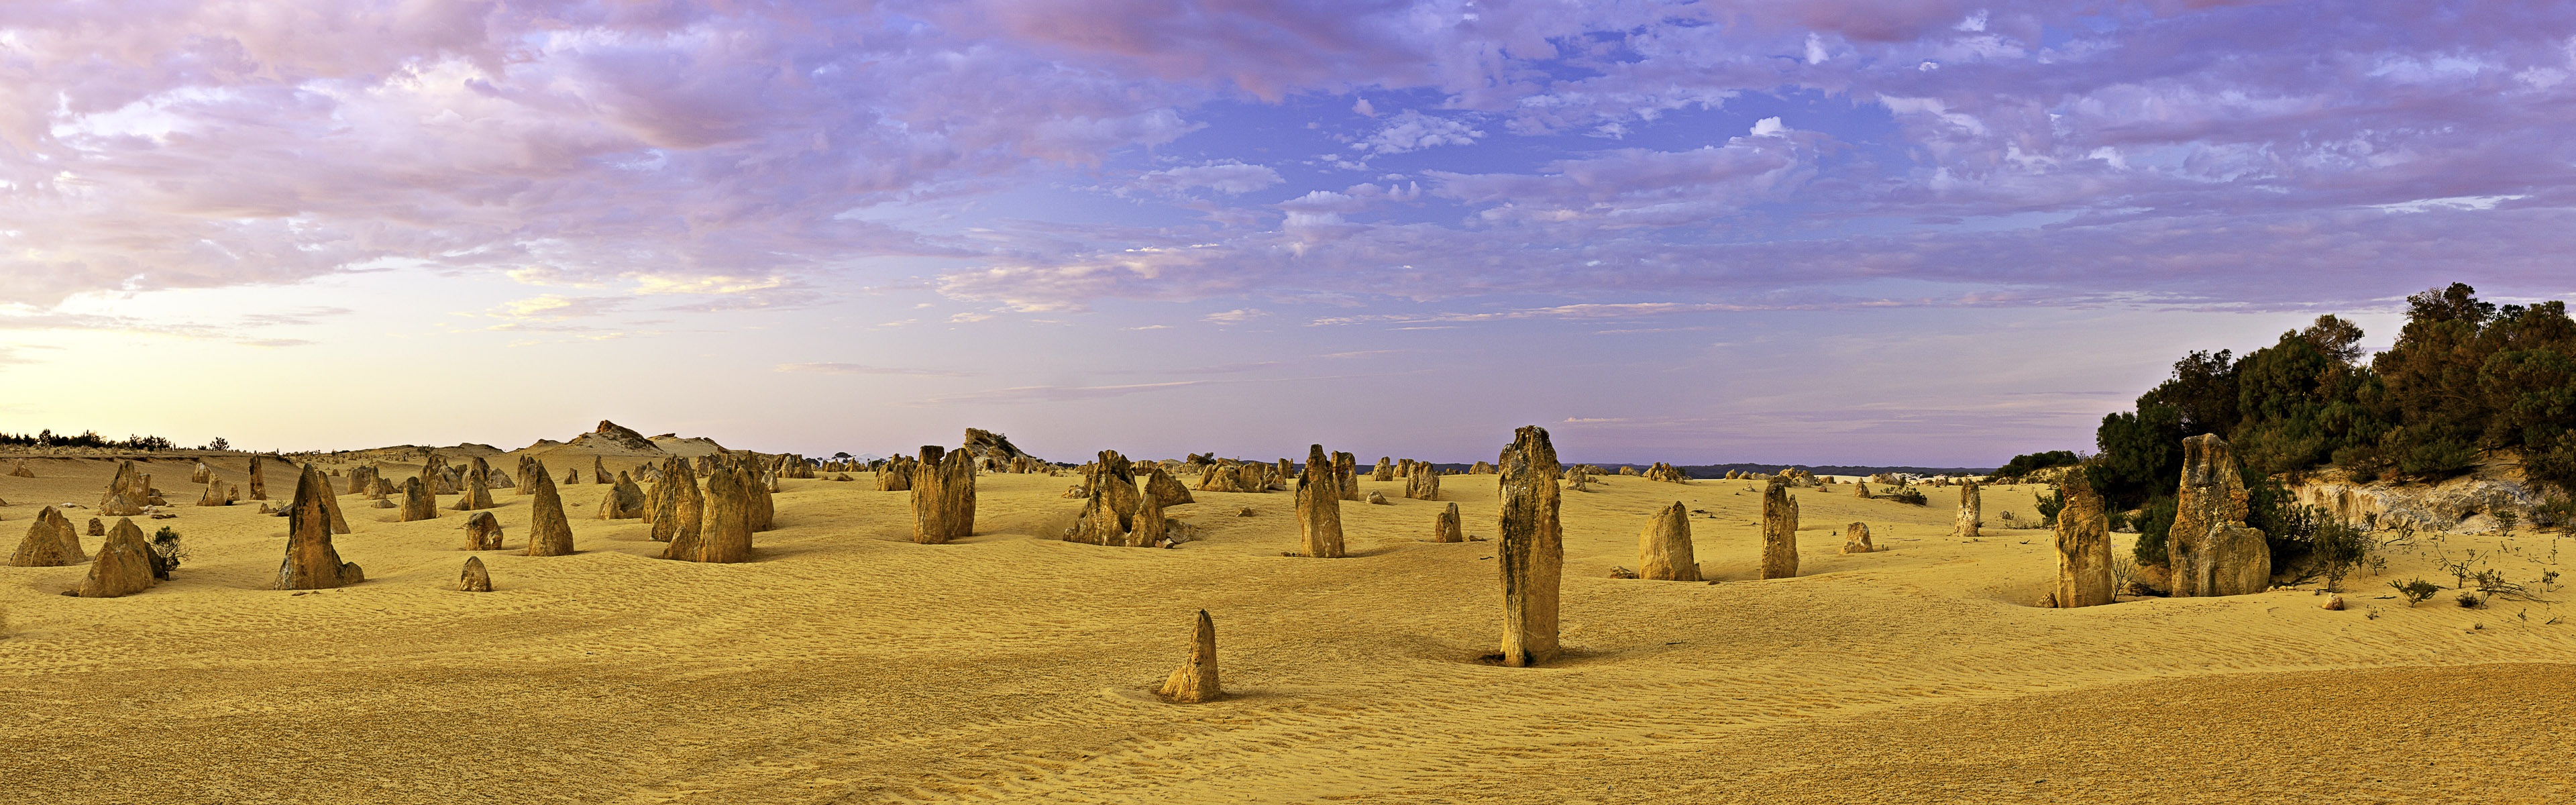 Les déserts chauds et arides, de Windows 8 fonds d'écran widescreen panoramique #8 - 3840x1200